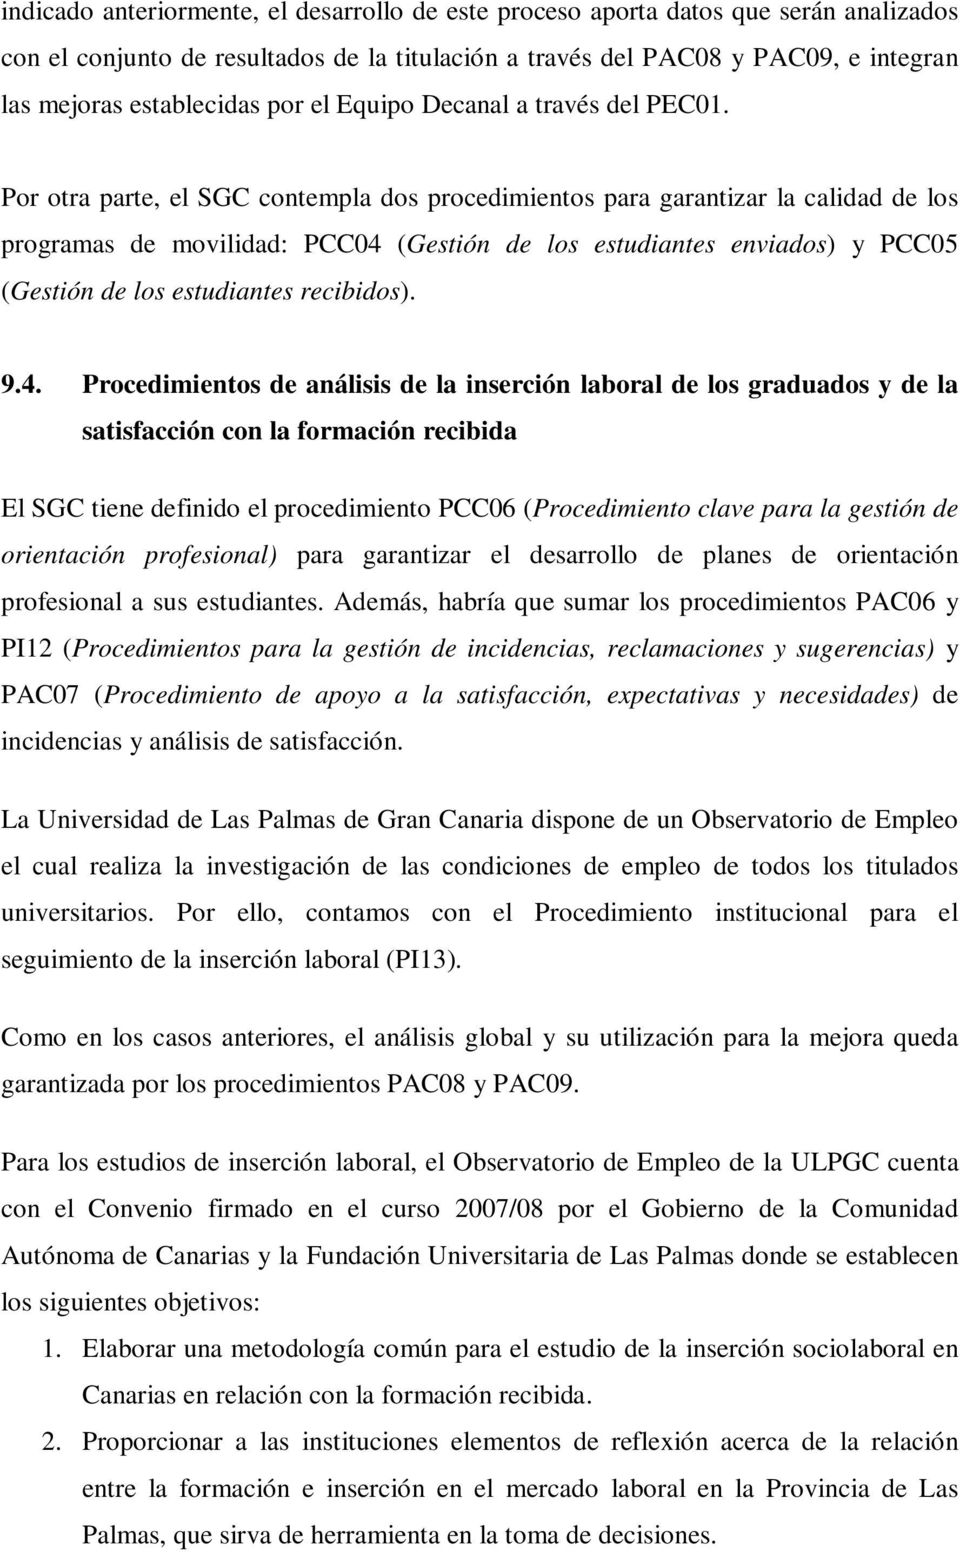 Por otra parte, el SGC contempla dos procedimientos para garantizar la calidad de los programas de movilidad: PCC04 (Gestión de los estudiantes enviados) y PCC05 (Gestión de los estudiantes